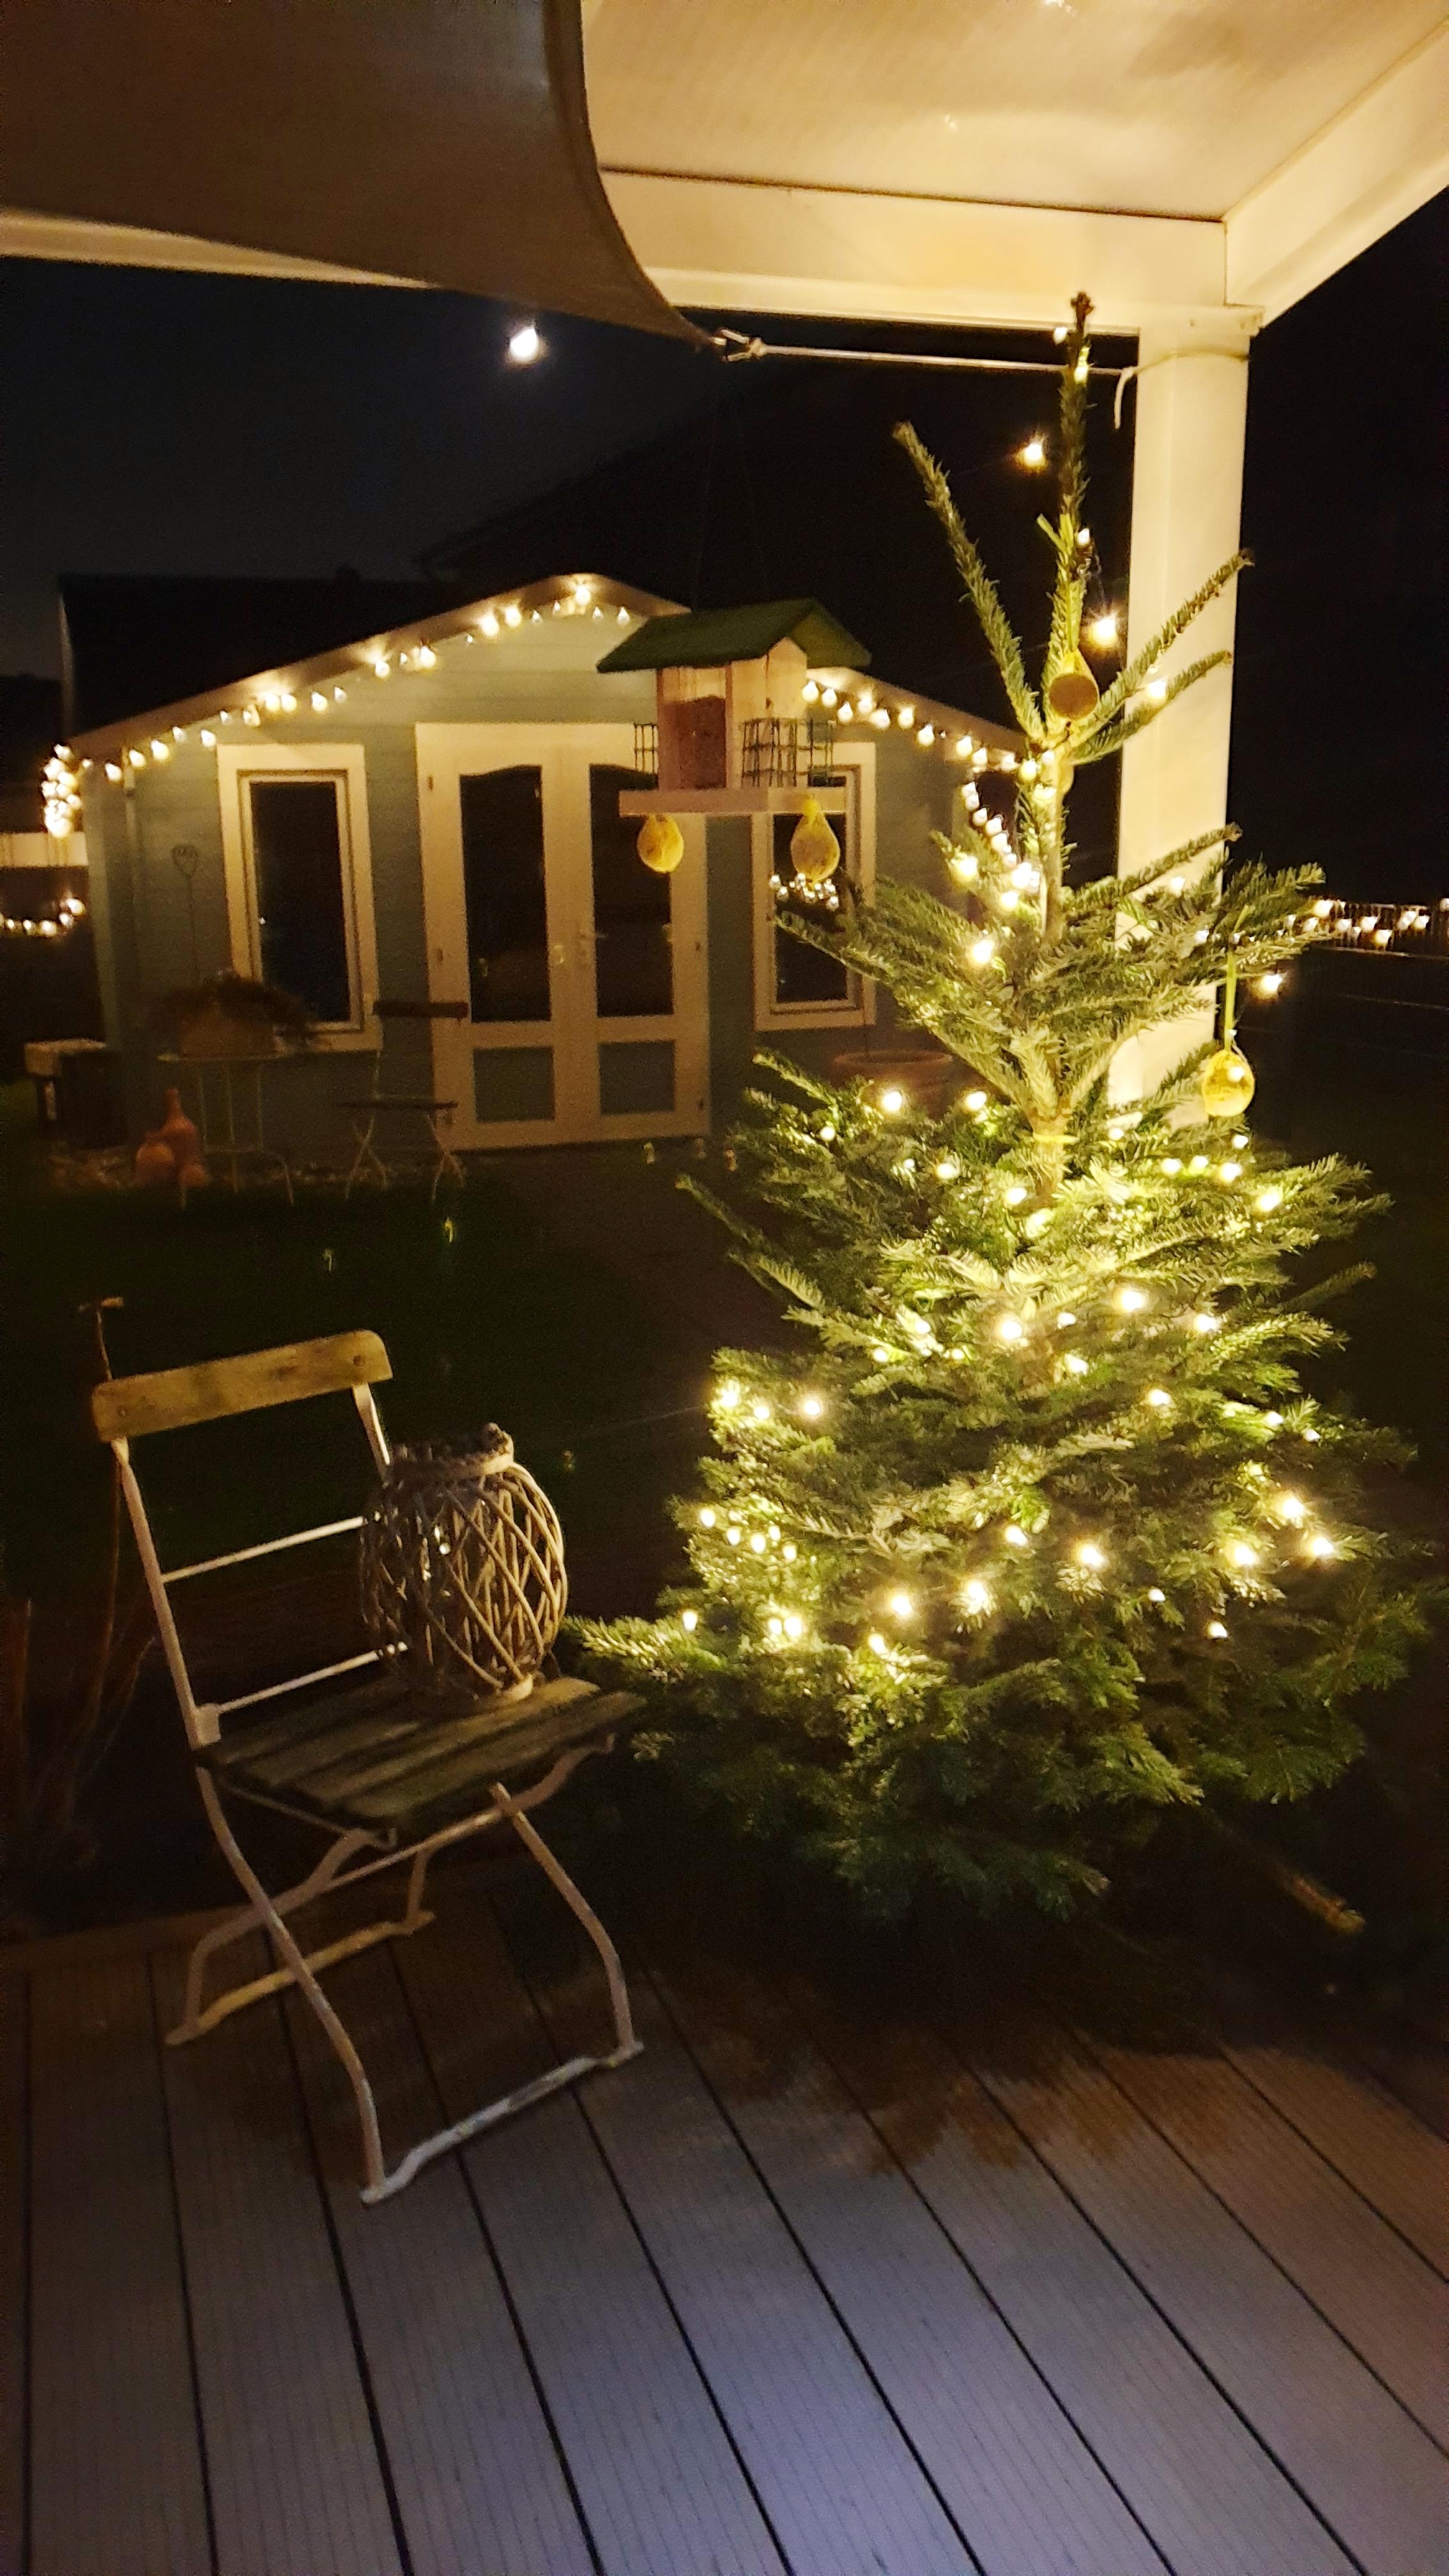 #weihnachtsbaum #Gartenbeleuchtung
Es weihnachtet auch im Garten 
